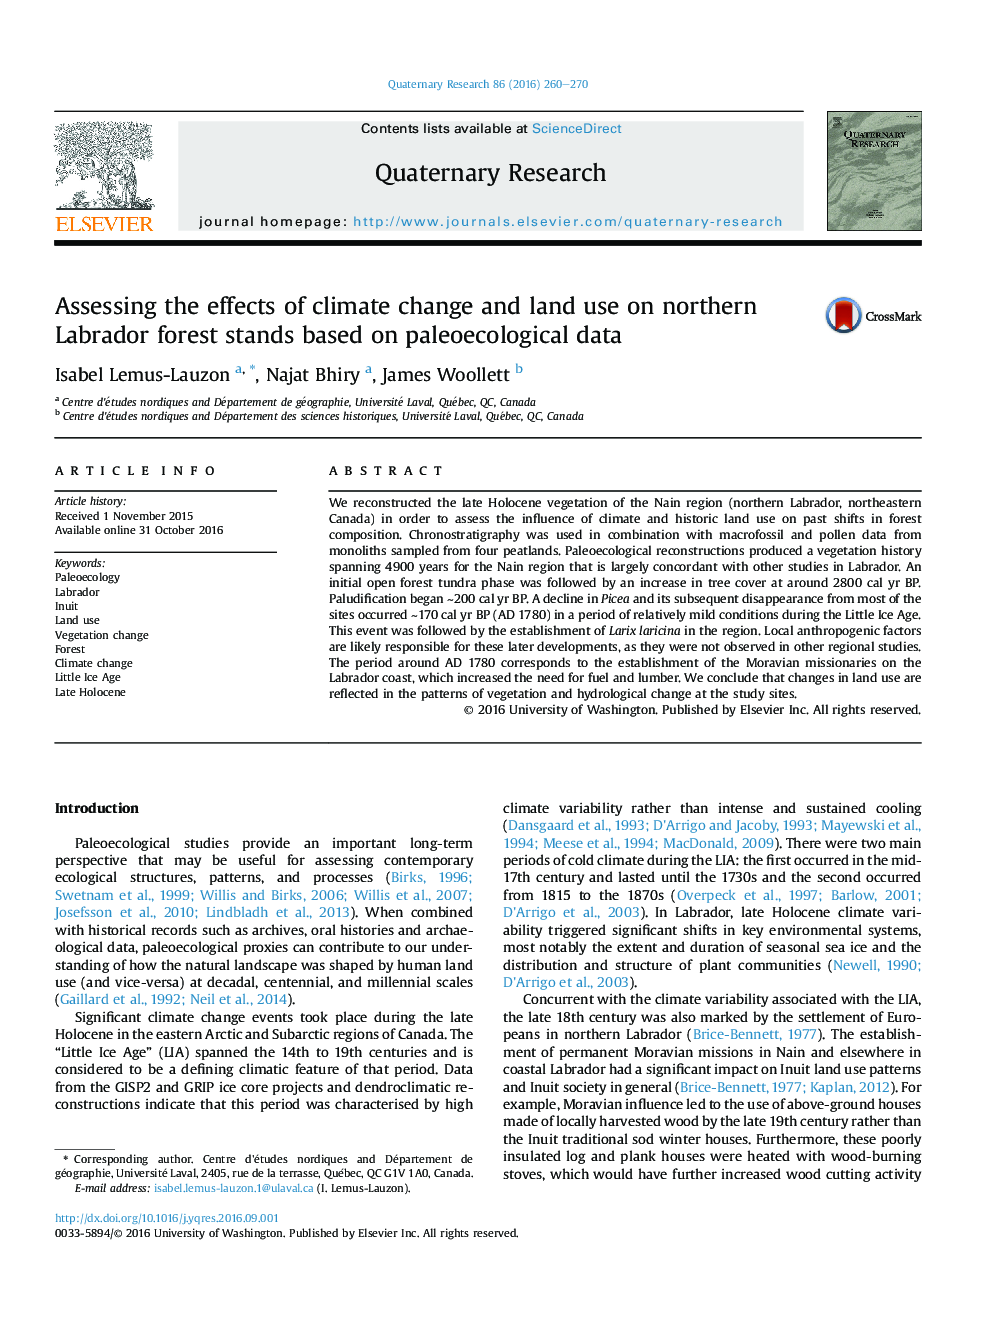 ارزیابی اثرات تغییرات اقلیمی و استفاده از زمین در جنگل های شمالی لابرادور بر اساس داده های پائئوسکوئیک 